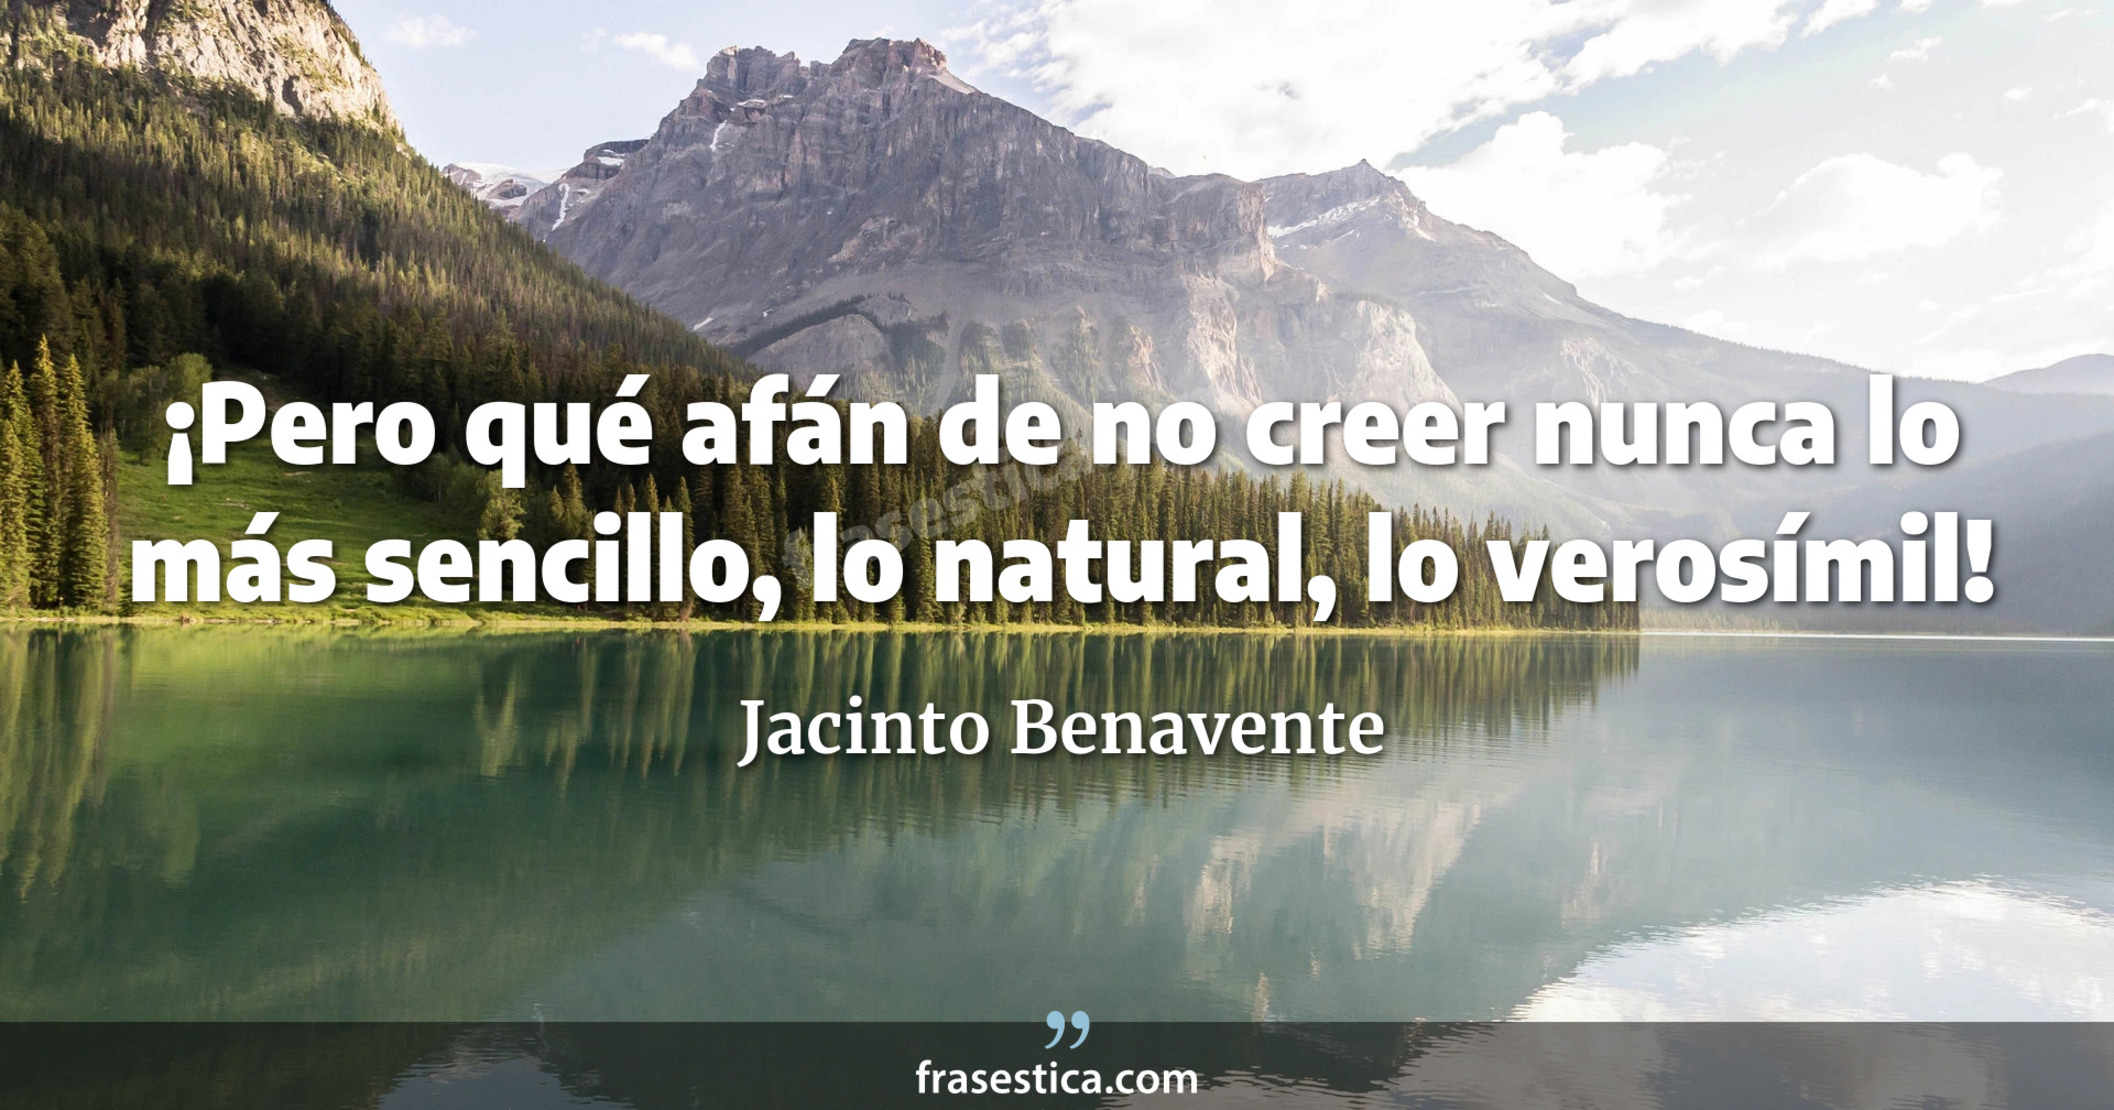 ¡Pero qué afán de no creer nunca lo más sencillo, lo natural, lo verosímil! - Jacinto Benavente